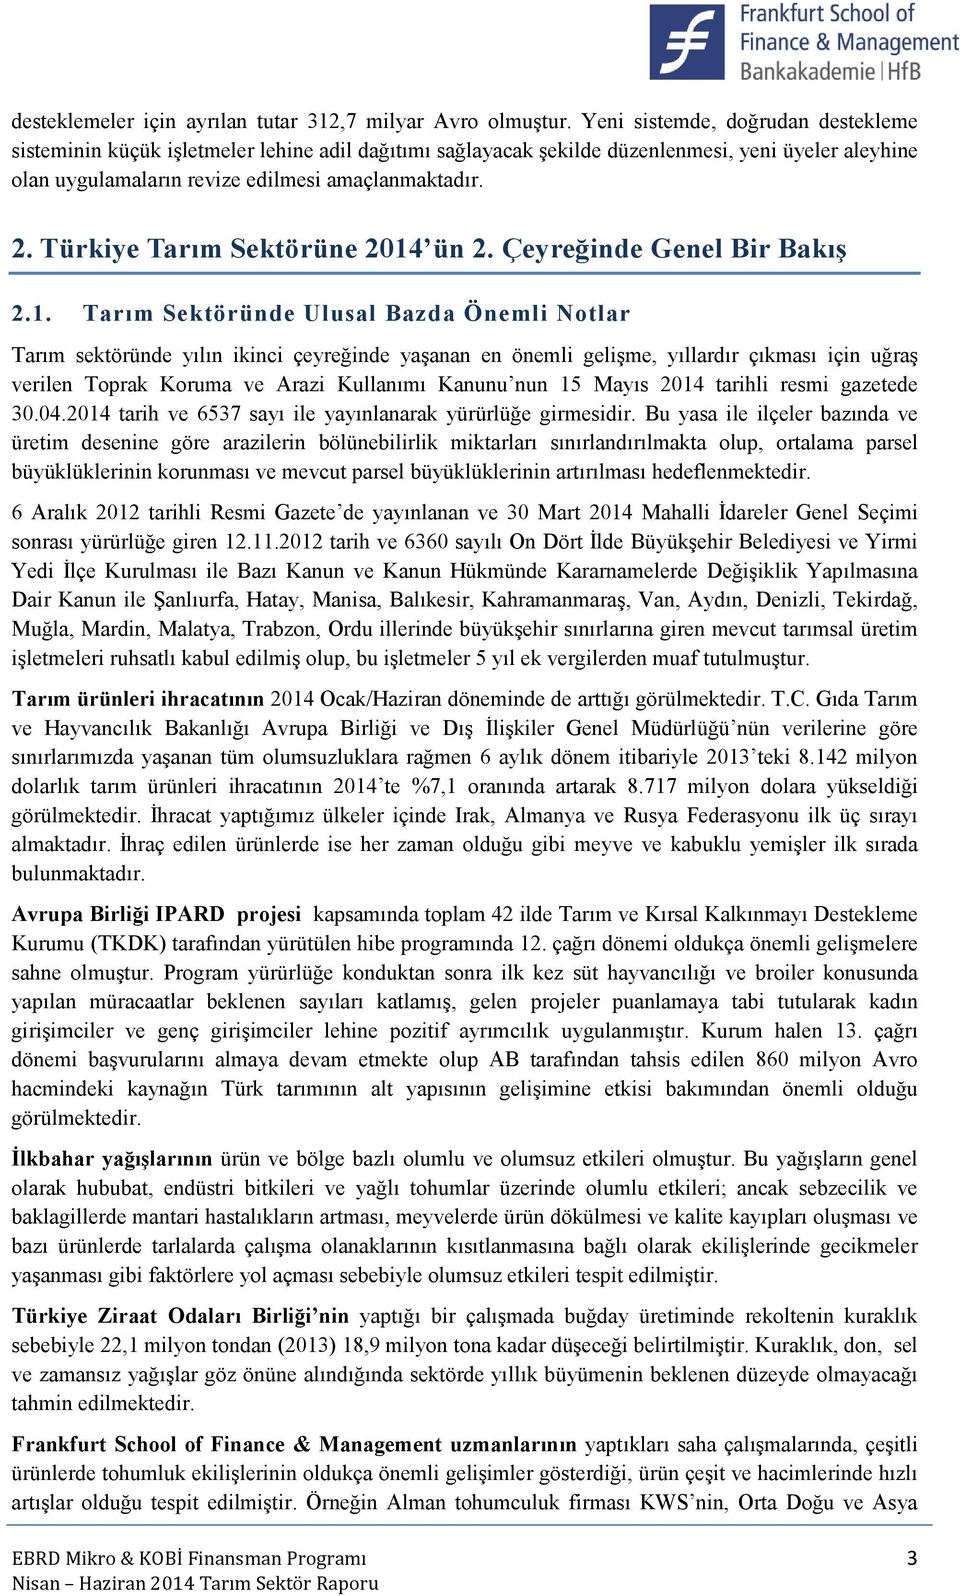 Türkiye Tarım Sektörüne 2014